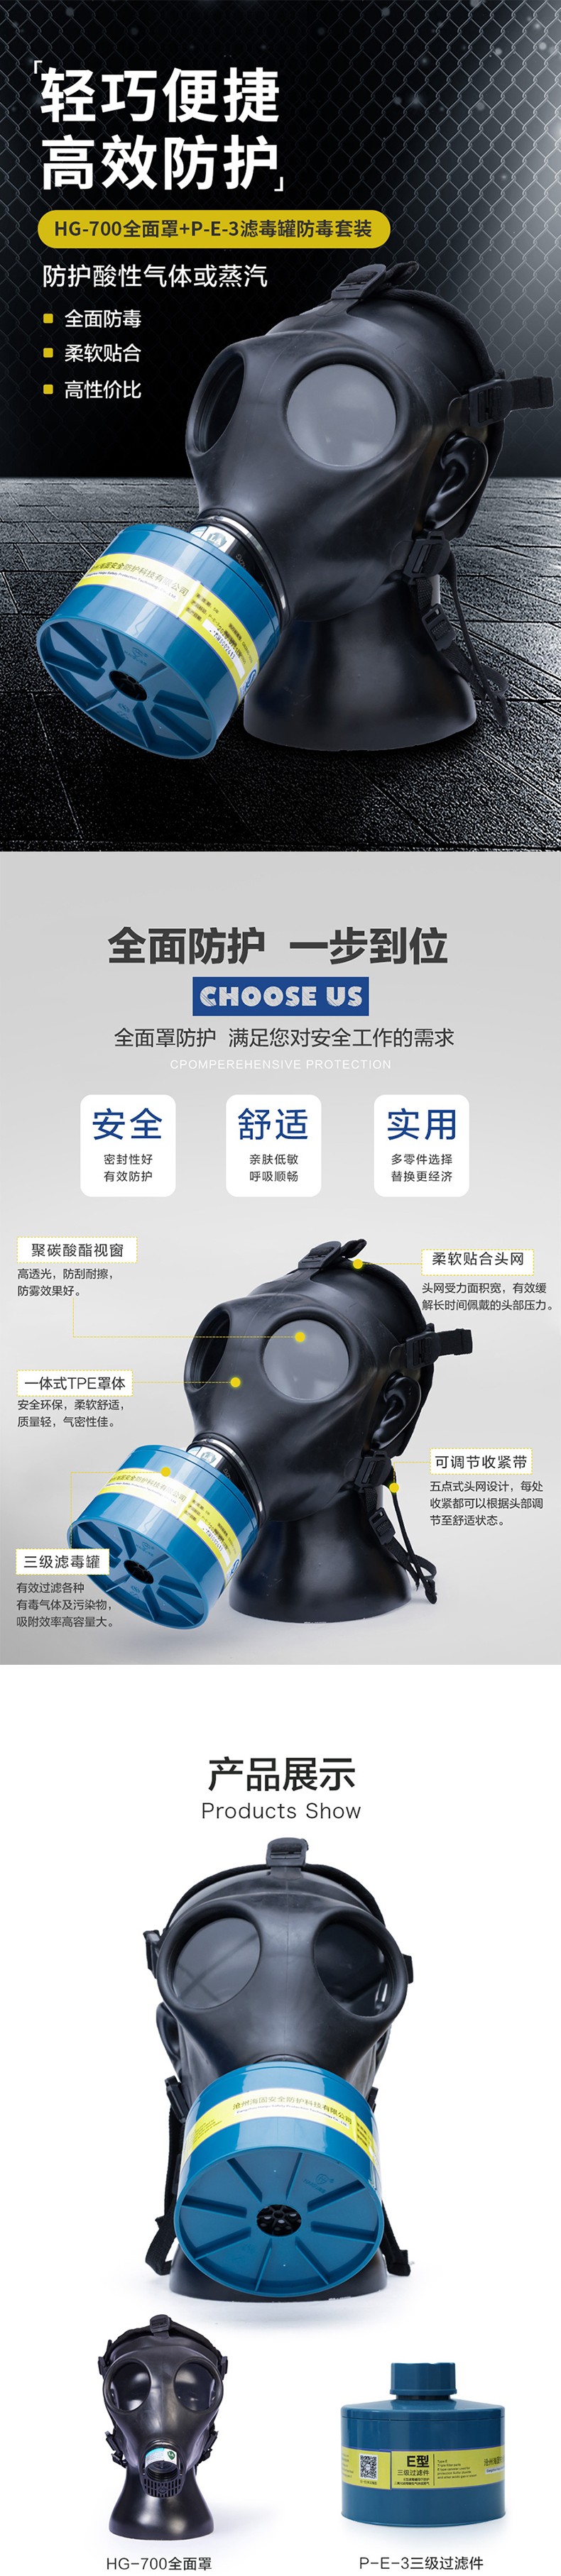 海固HG-700 P-E-3滤毒罐酸性气体专用防毒面具图片